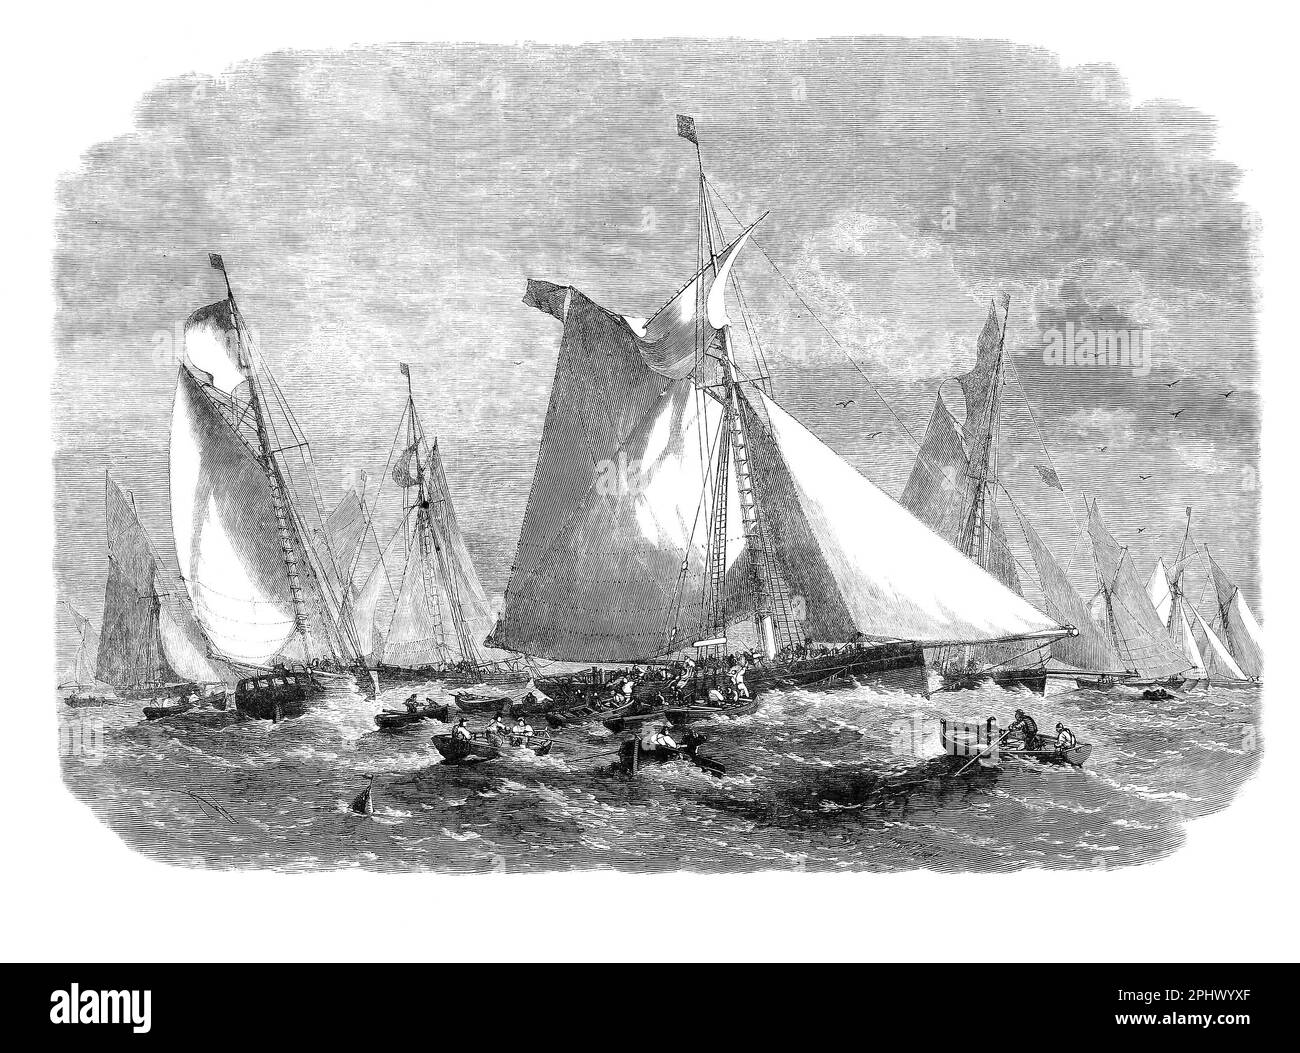 Un barreur collectant du poisson de la flotte de chalutiers sur la Doggerbank, une grande banque de sable de la mer du Nord au large de la côte est de l'Angleterre. Barking est une ville de l'est de Londres, en Angleterre, où la pêche a été l'industrie la plus importante jusqu'au milieu des 19th siècles. Jusqu'en 1870 environ, le commerce était principalement effectué sur des poissons vivants, utilisant des maettes bien fourrées (comme dans l'illustration) dans lesquelles la partie centrale de la coque, entre deux cloisons étanches, était percée pour créer un « puits » dans lequel l'eau de mer pouvait circuler et le poisson pouvait rester frais plus longtemps. Banque D'Images